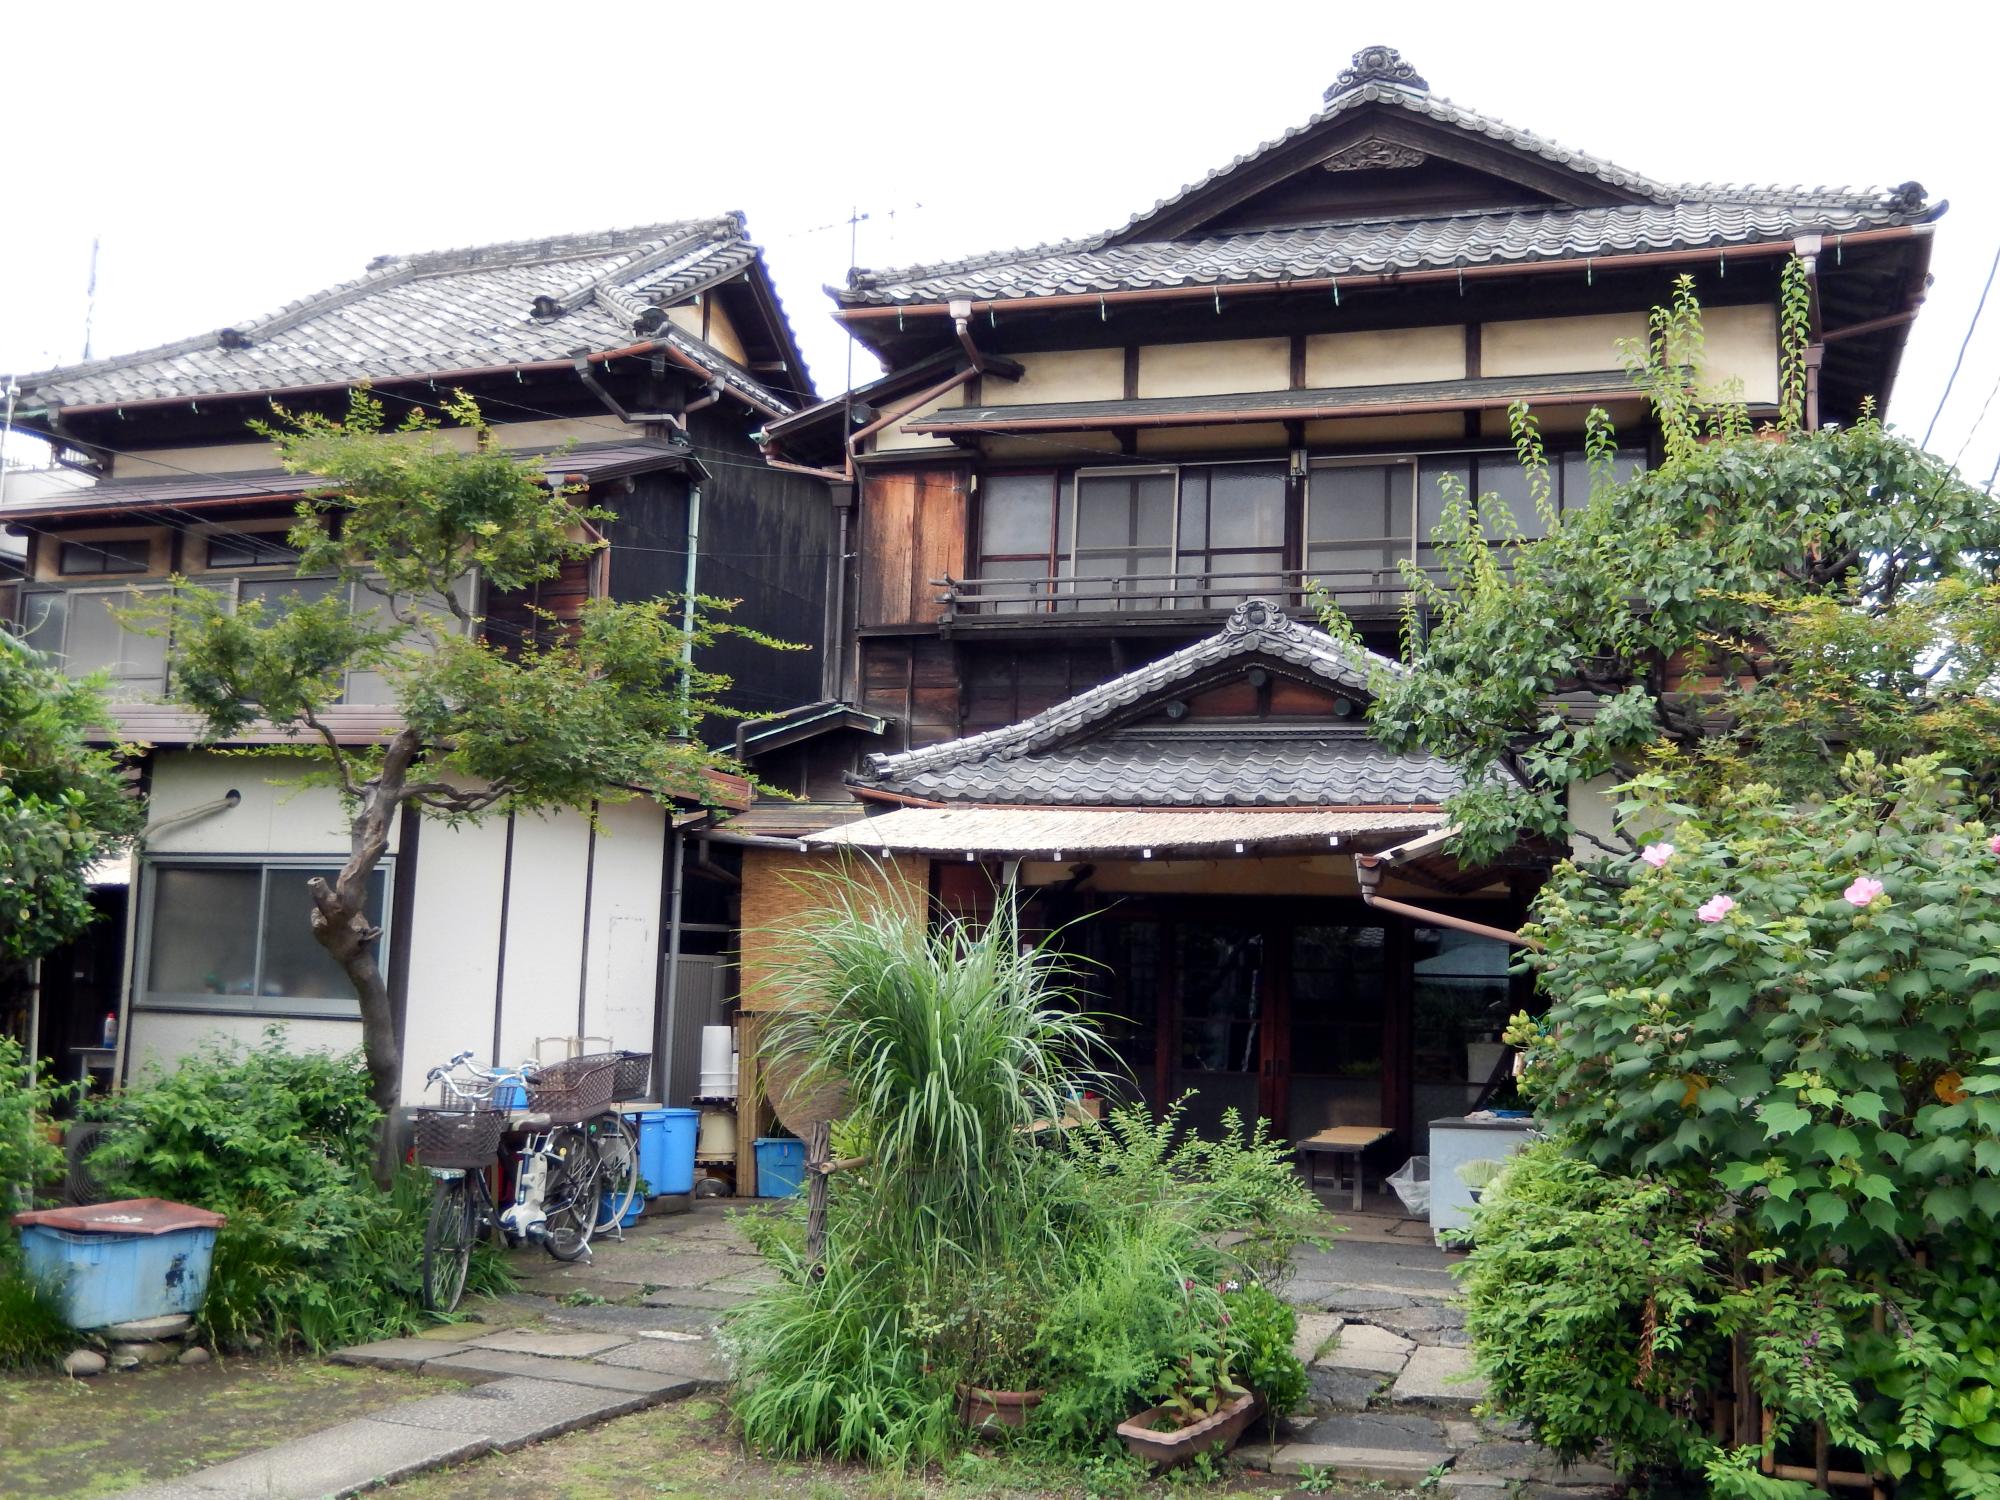 Tokyo (2016) - Older House